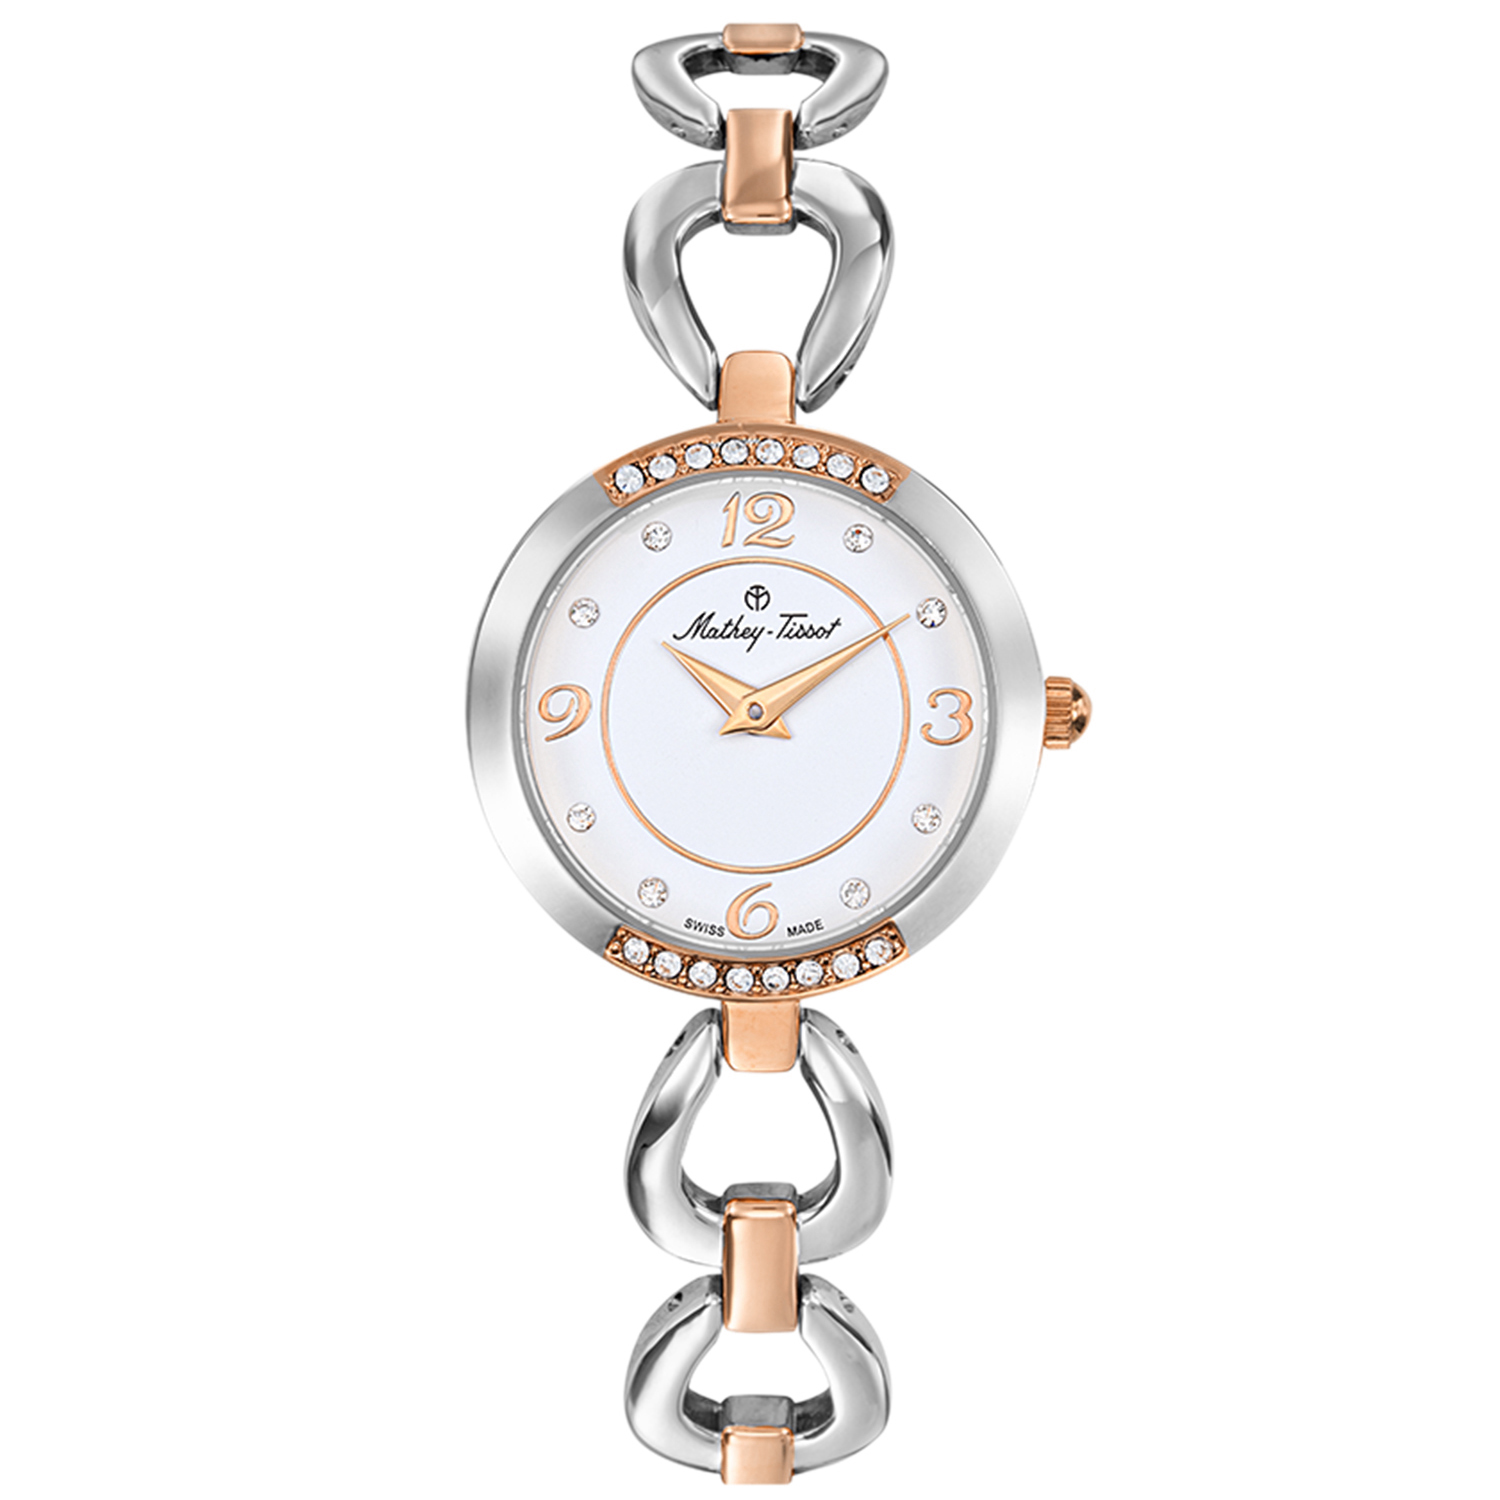 Mathey Tissot Women's Fleury 1496 White Dial Watch - D1496BI